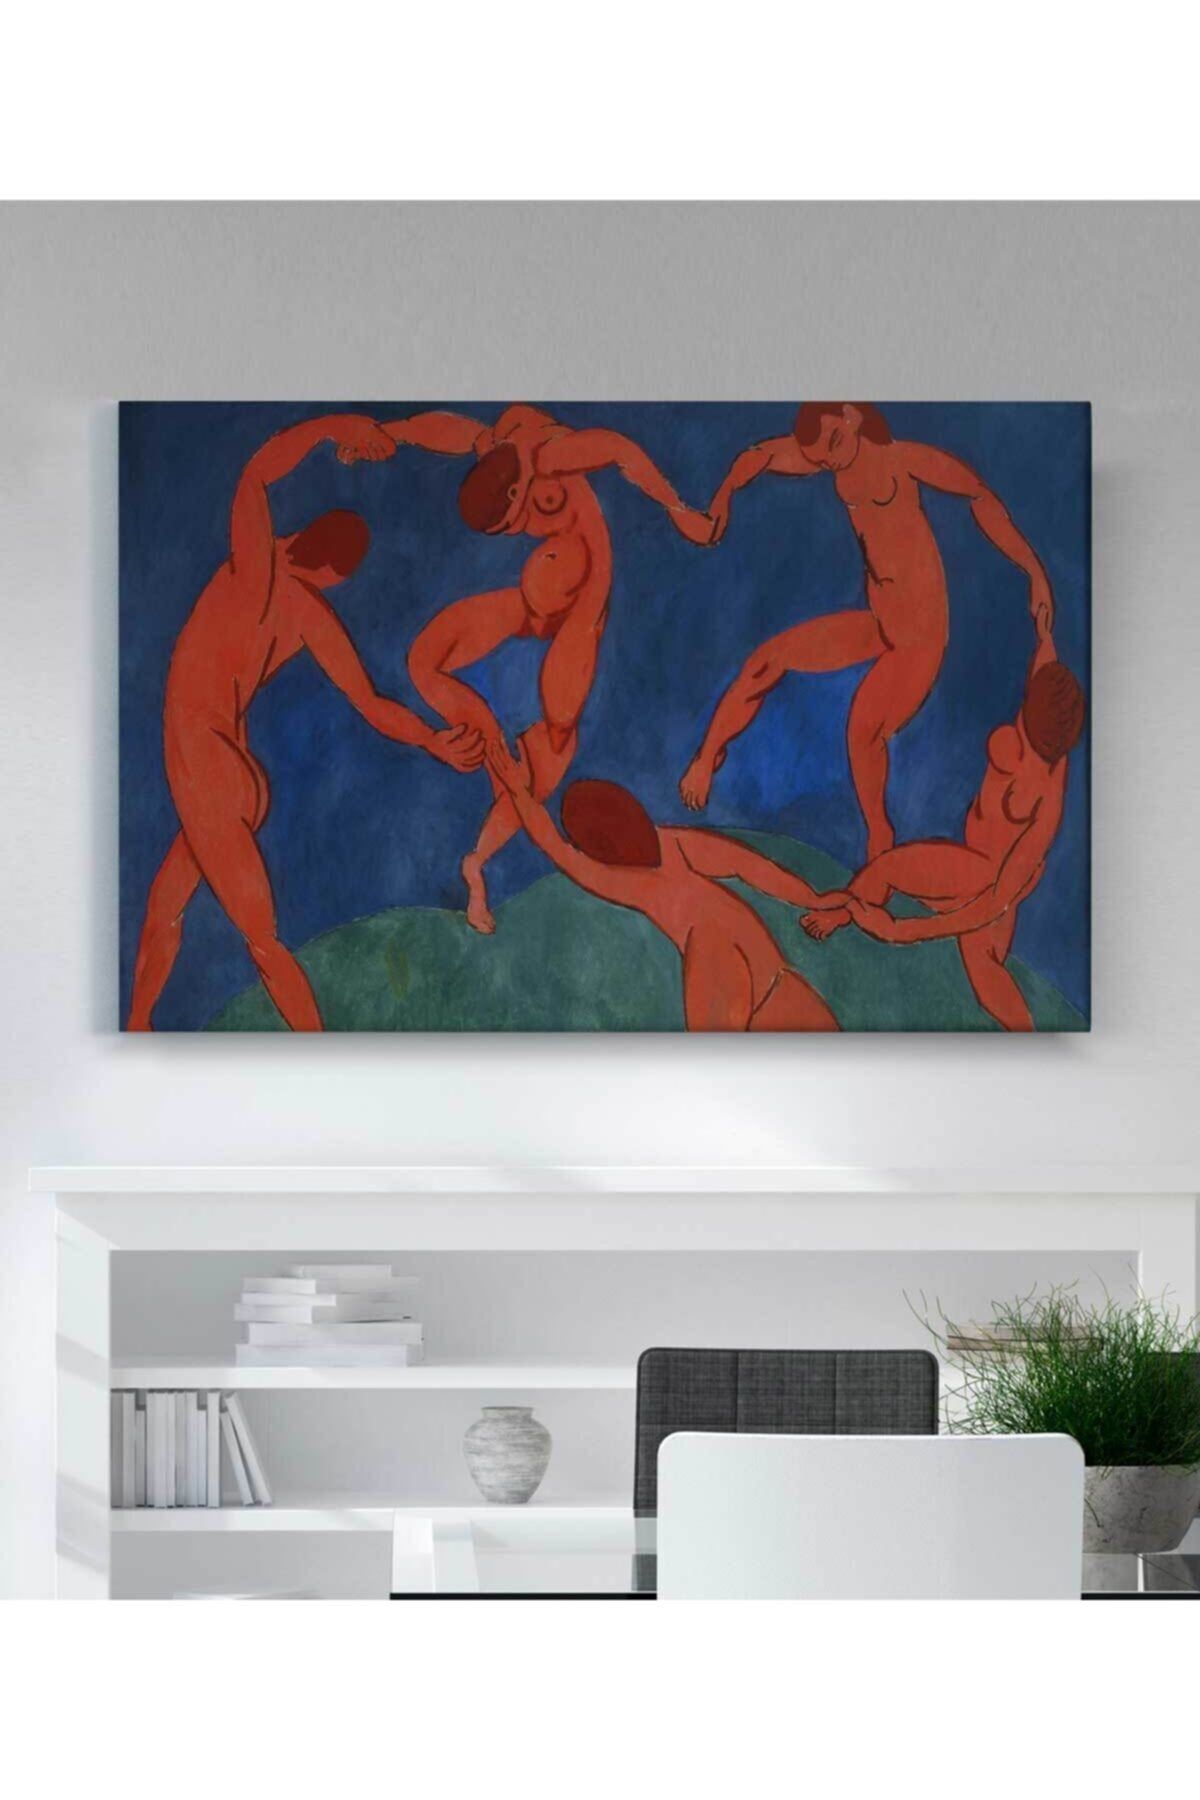 StellaStore Henri Matisse The Dance Kanvas Tablo